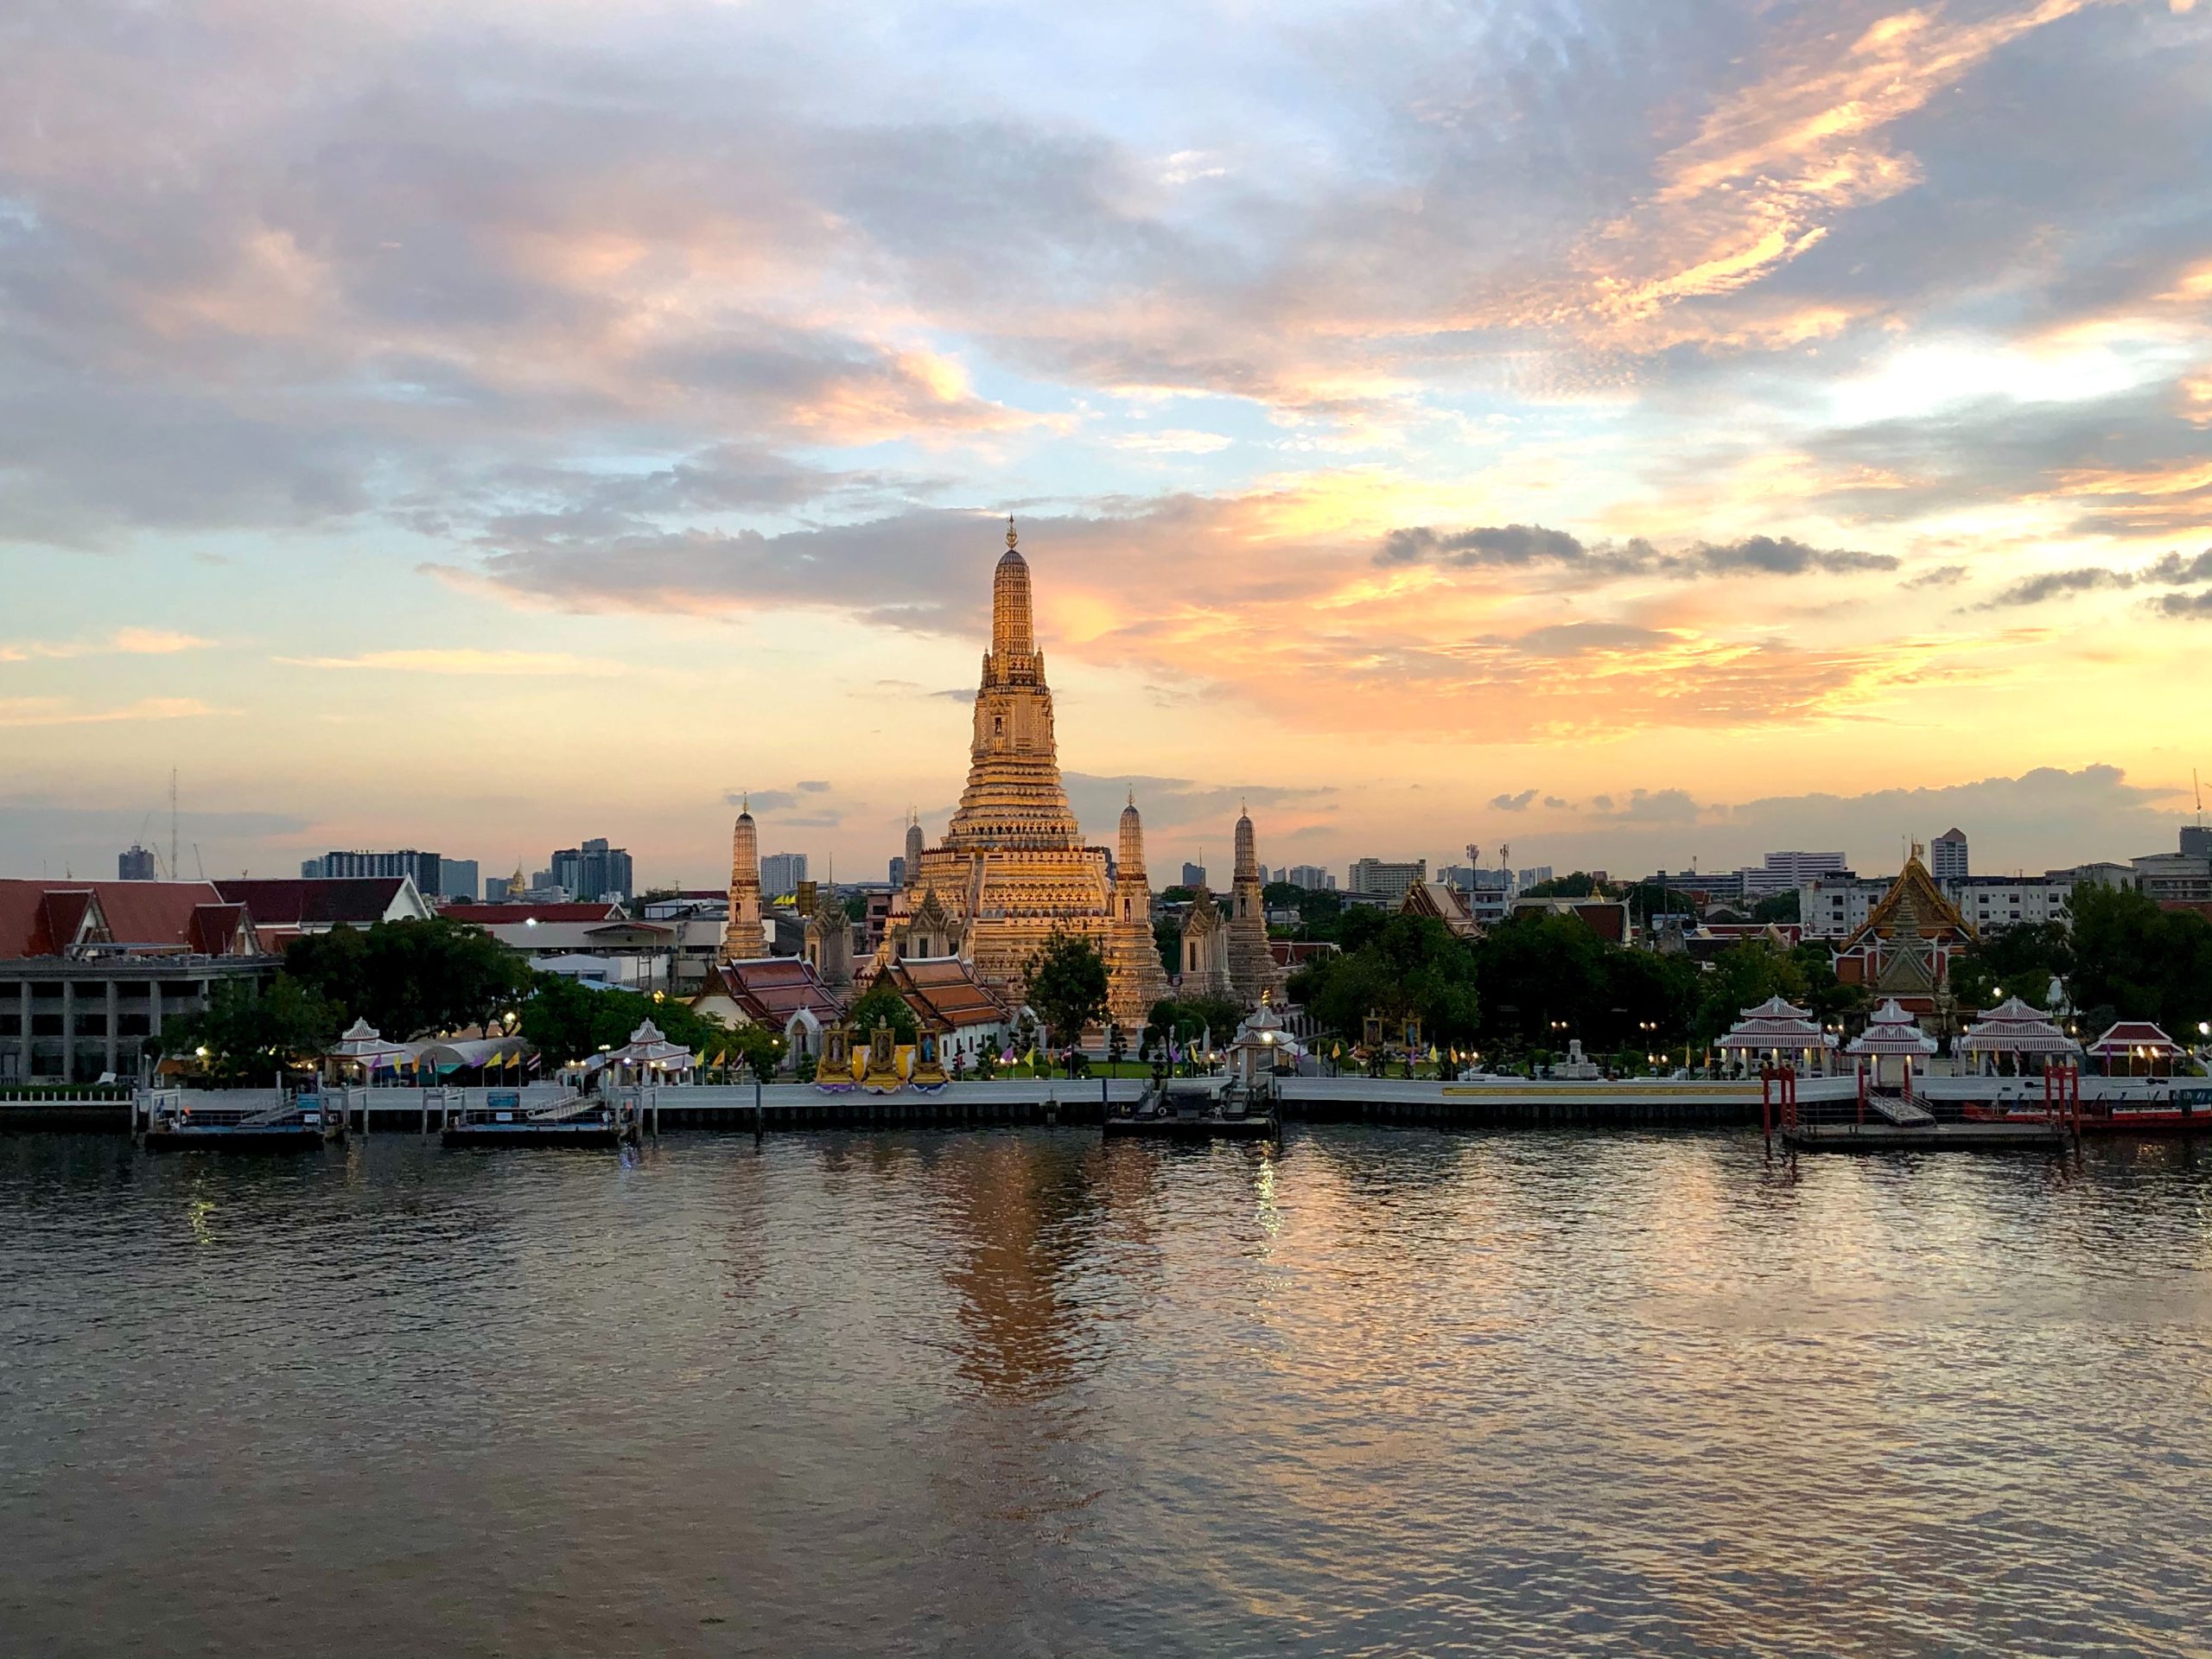 Image of Wat Arun temple and Chao Phraya River, Bangkok, Thailand